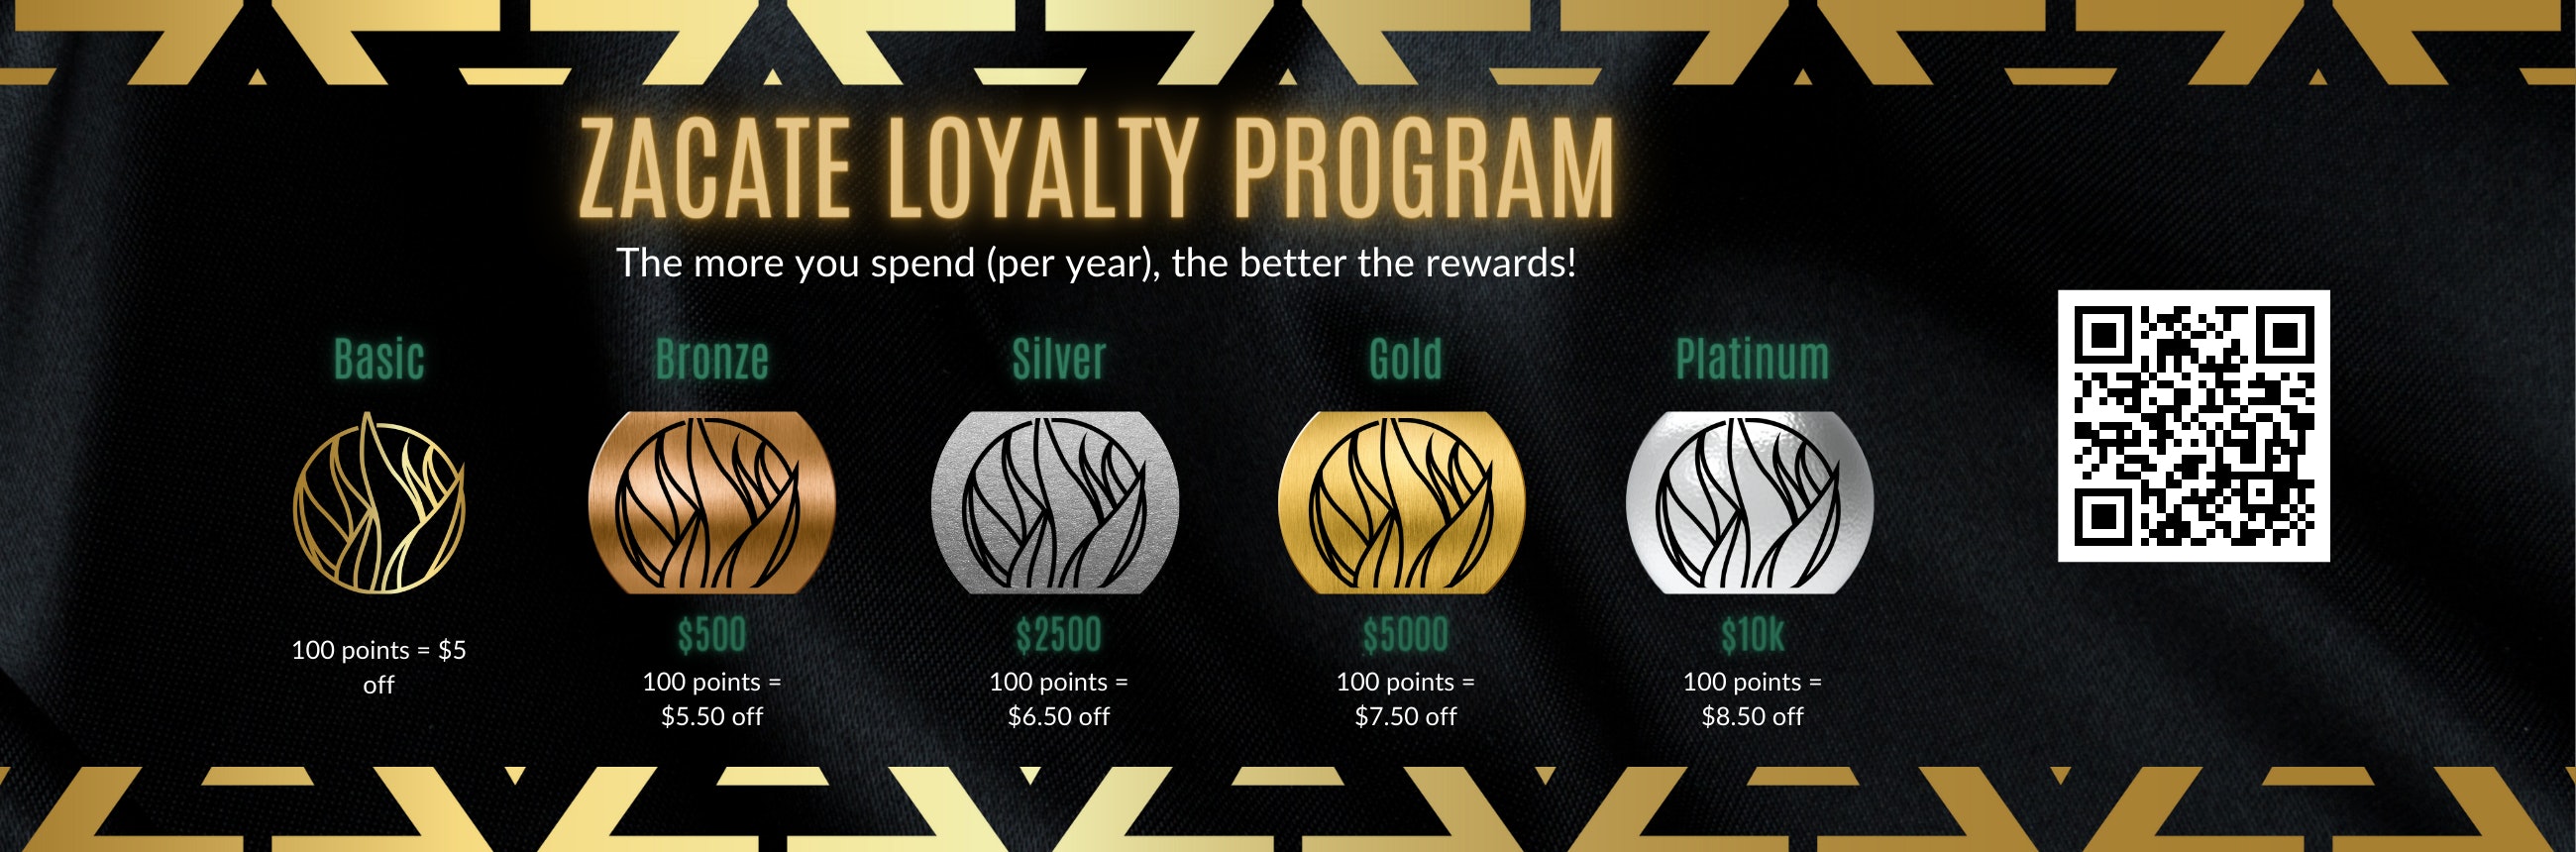 Zacate Loyalty Program